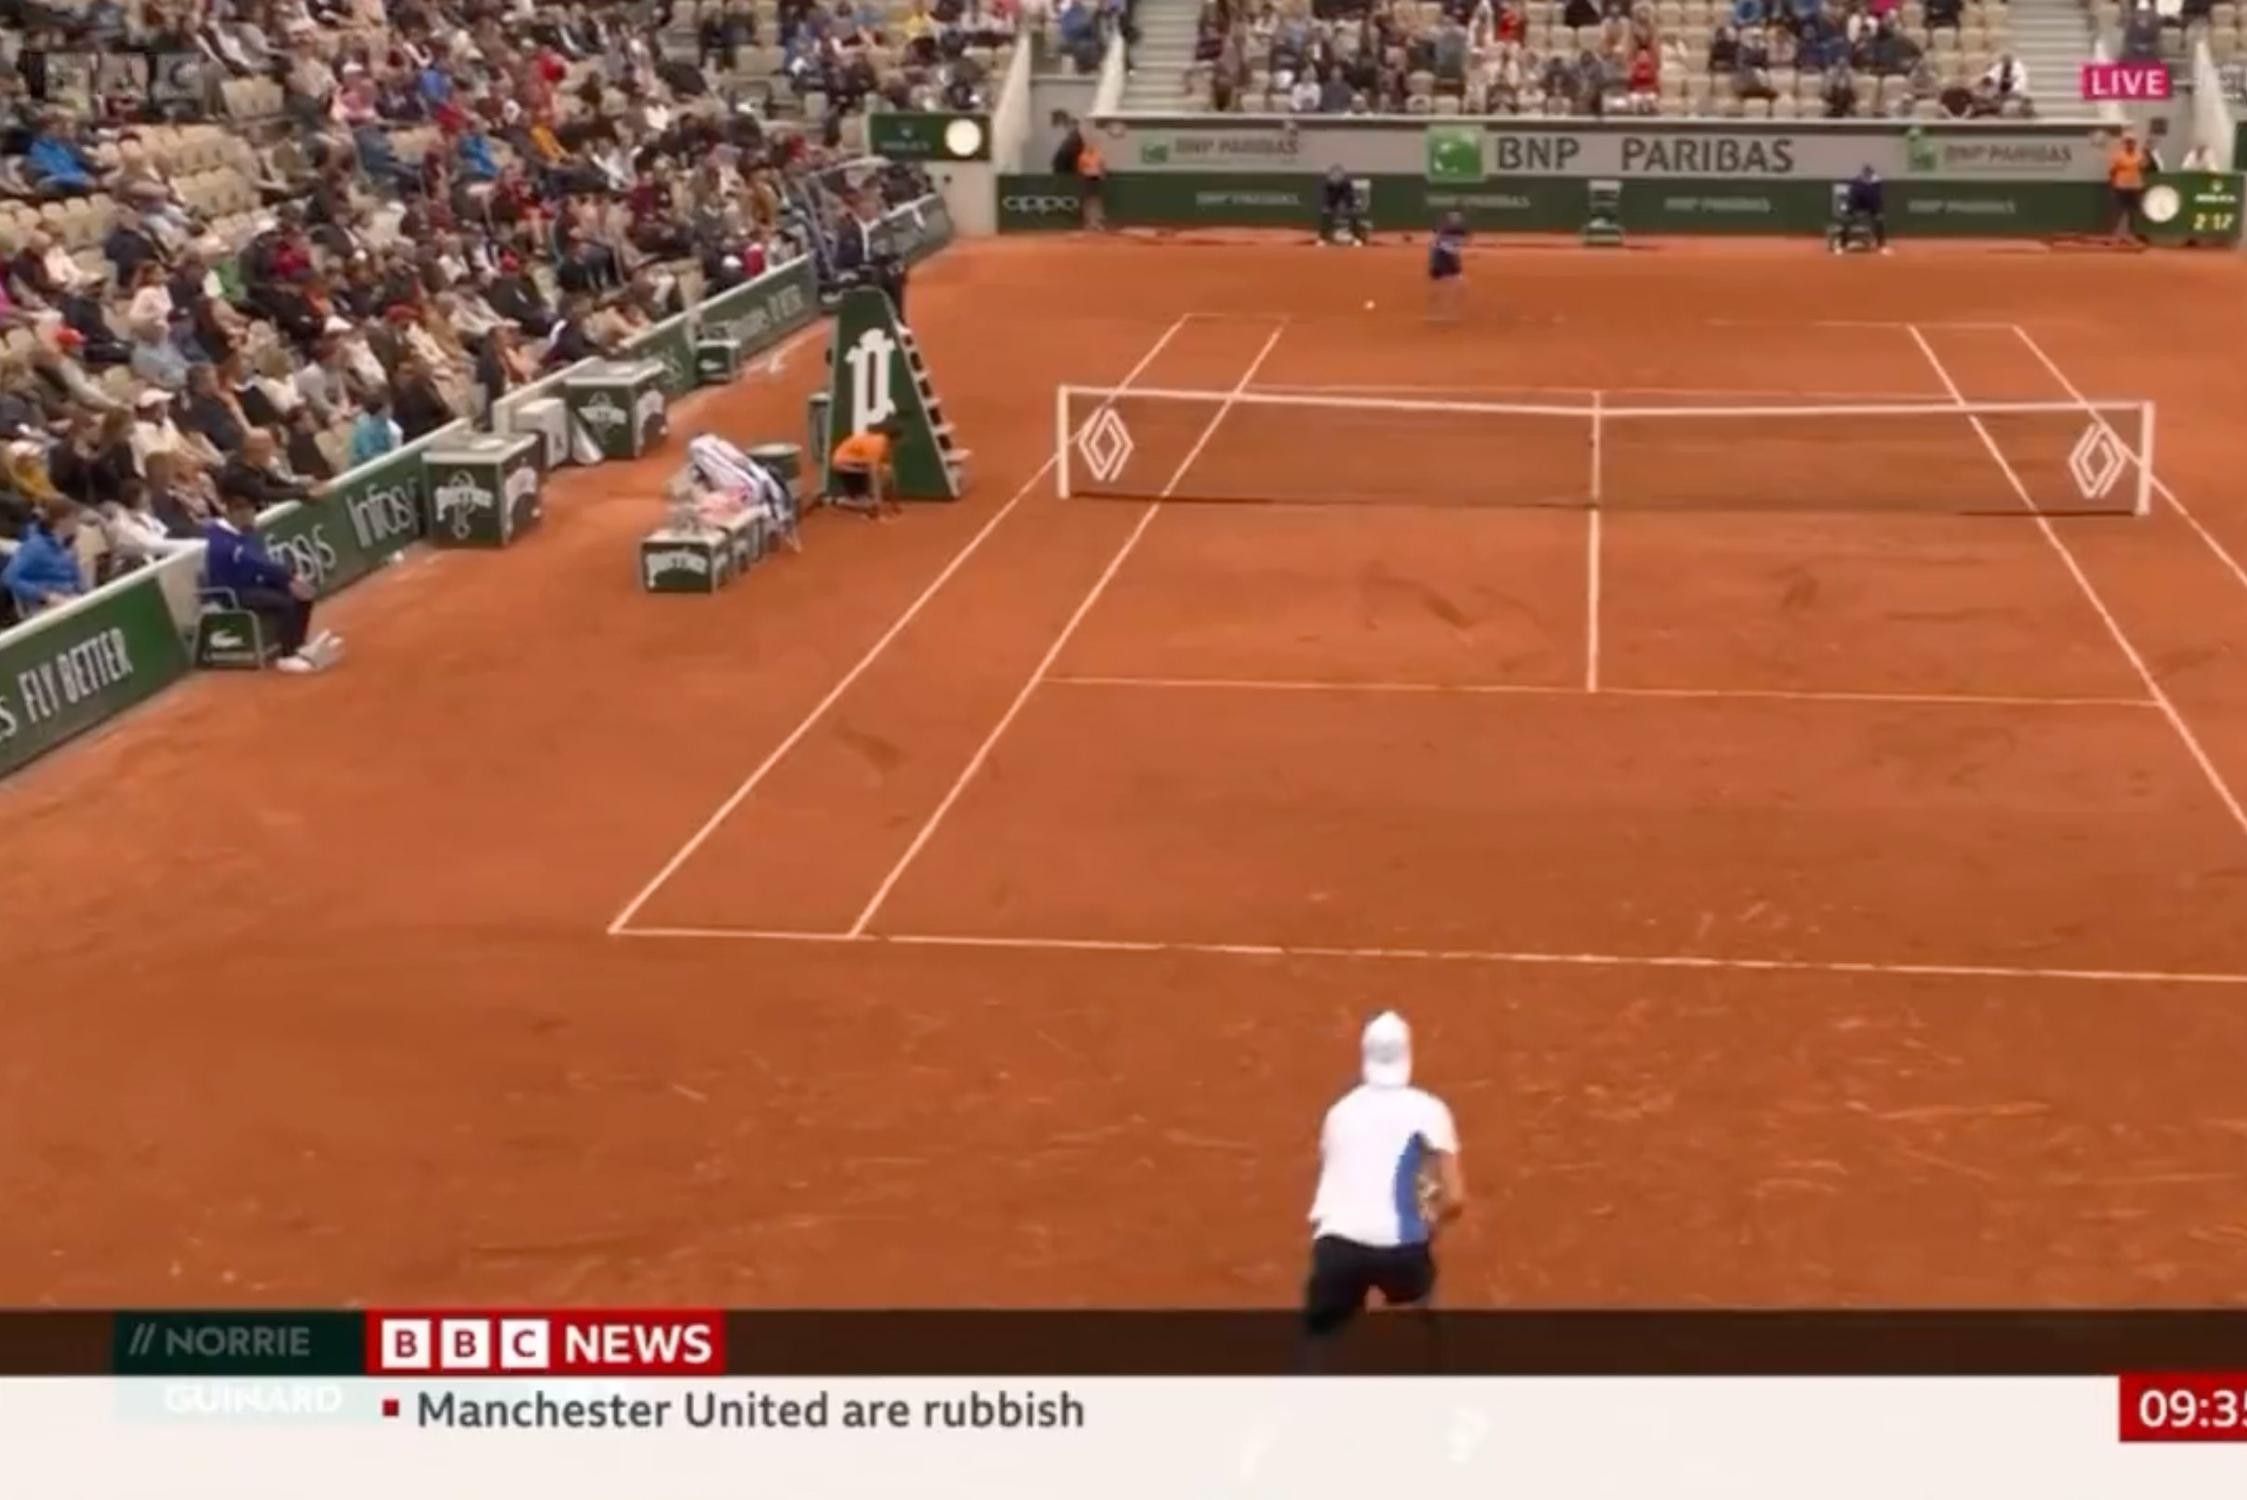 BBC moet excuses aanbieden na pijnlijke “fout van stagiaire” tijdens live-uitzending van Roland Garros